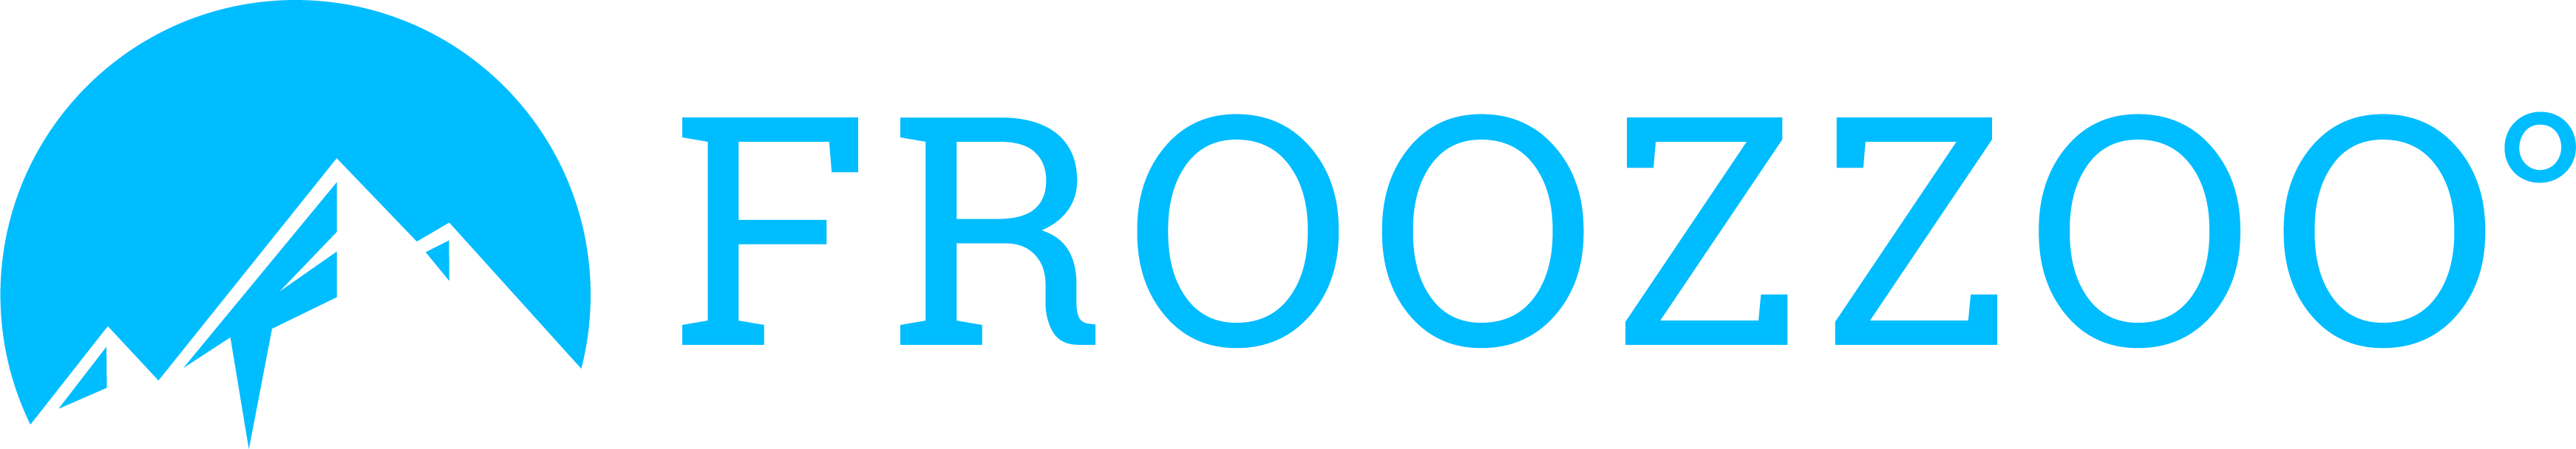 froozzoo logo